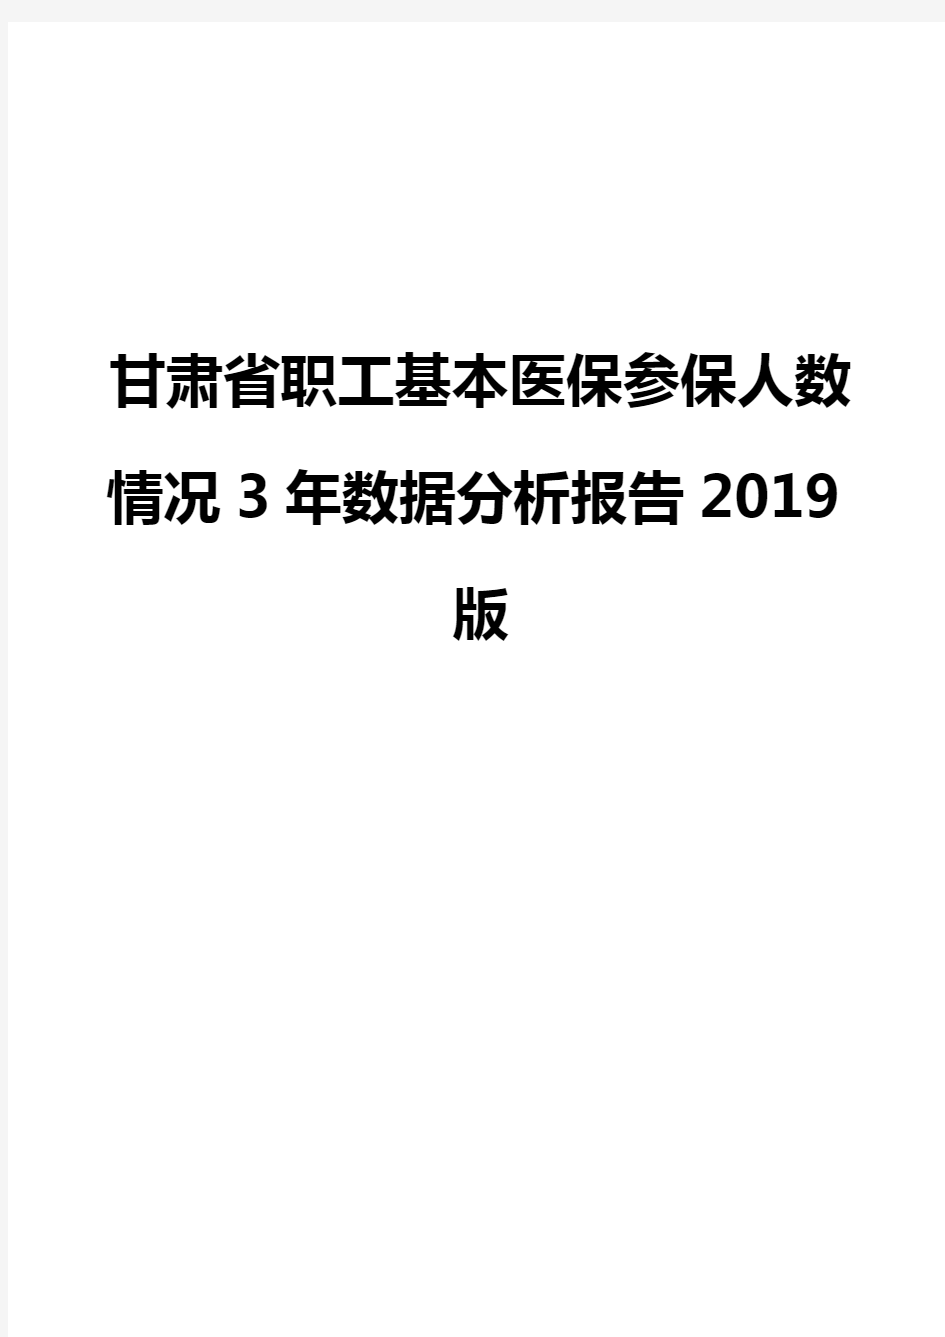 甘肃省职工基本医保参保人数情况3年数据分析报告2019版